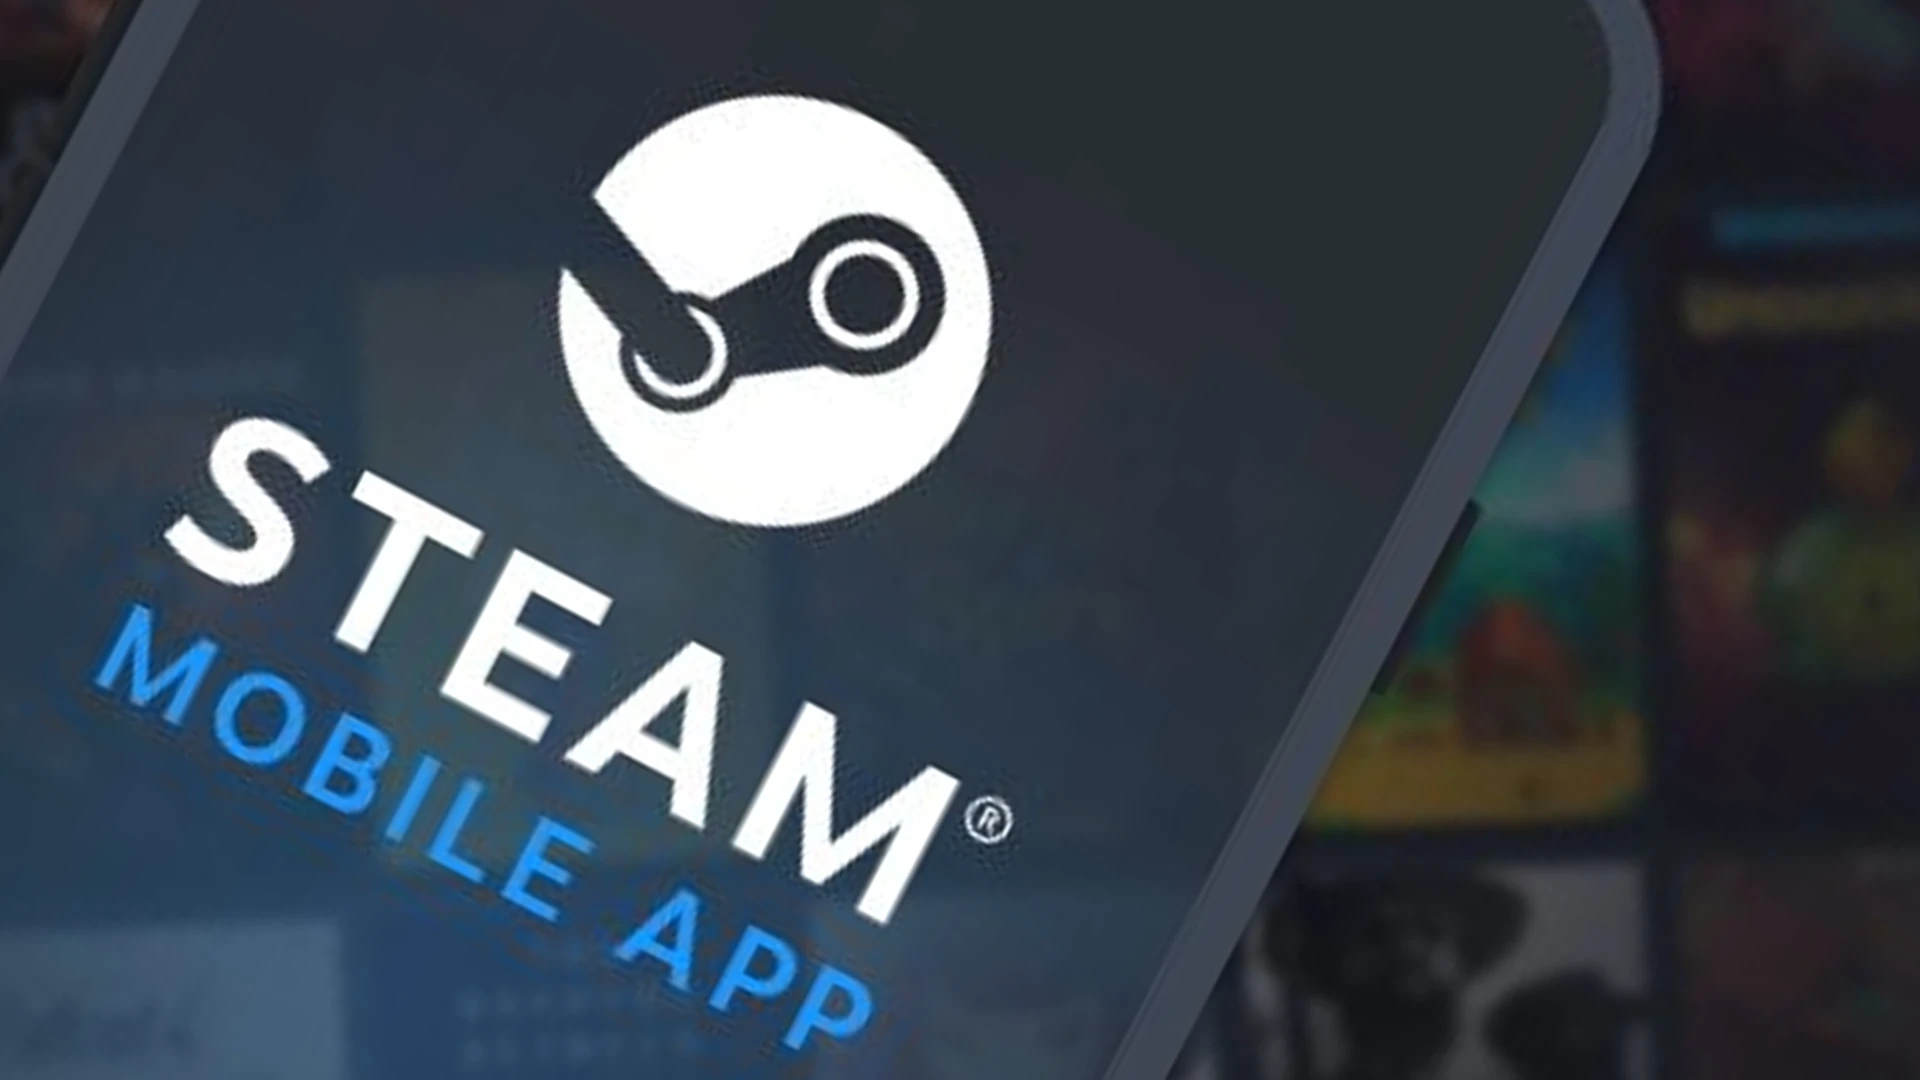 steam mobile app